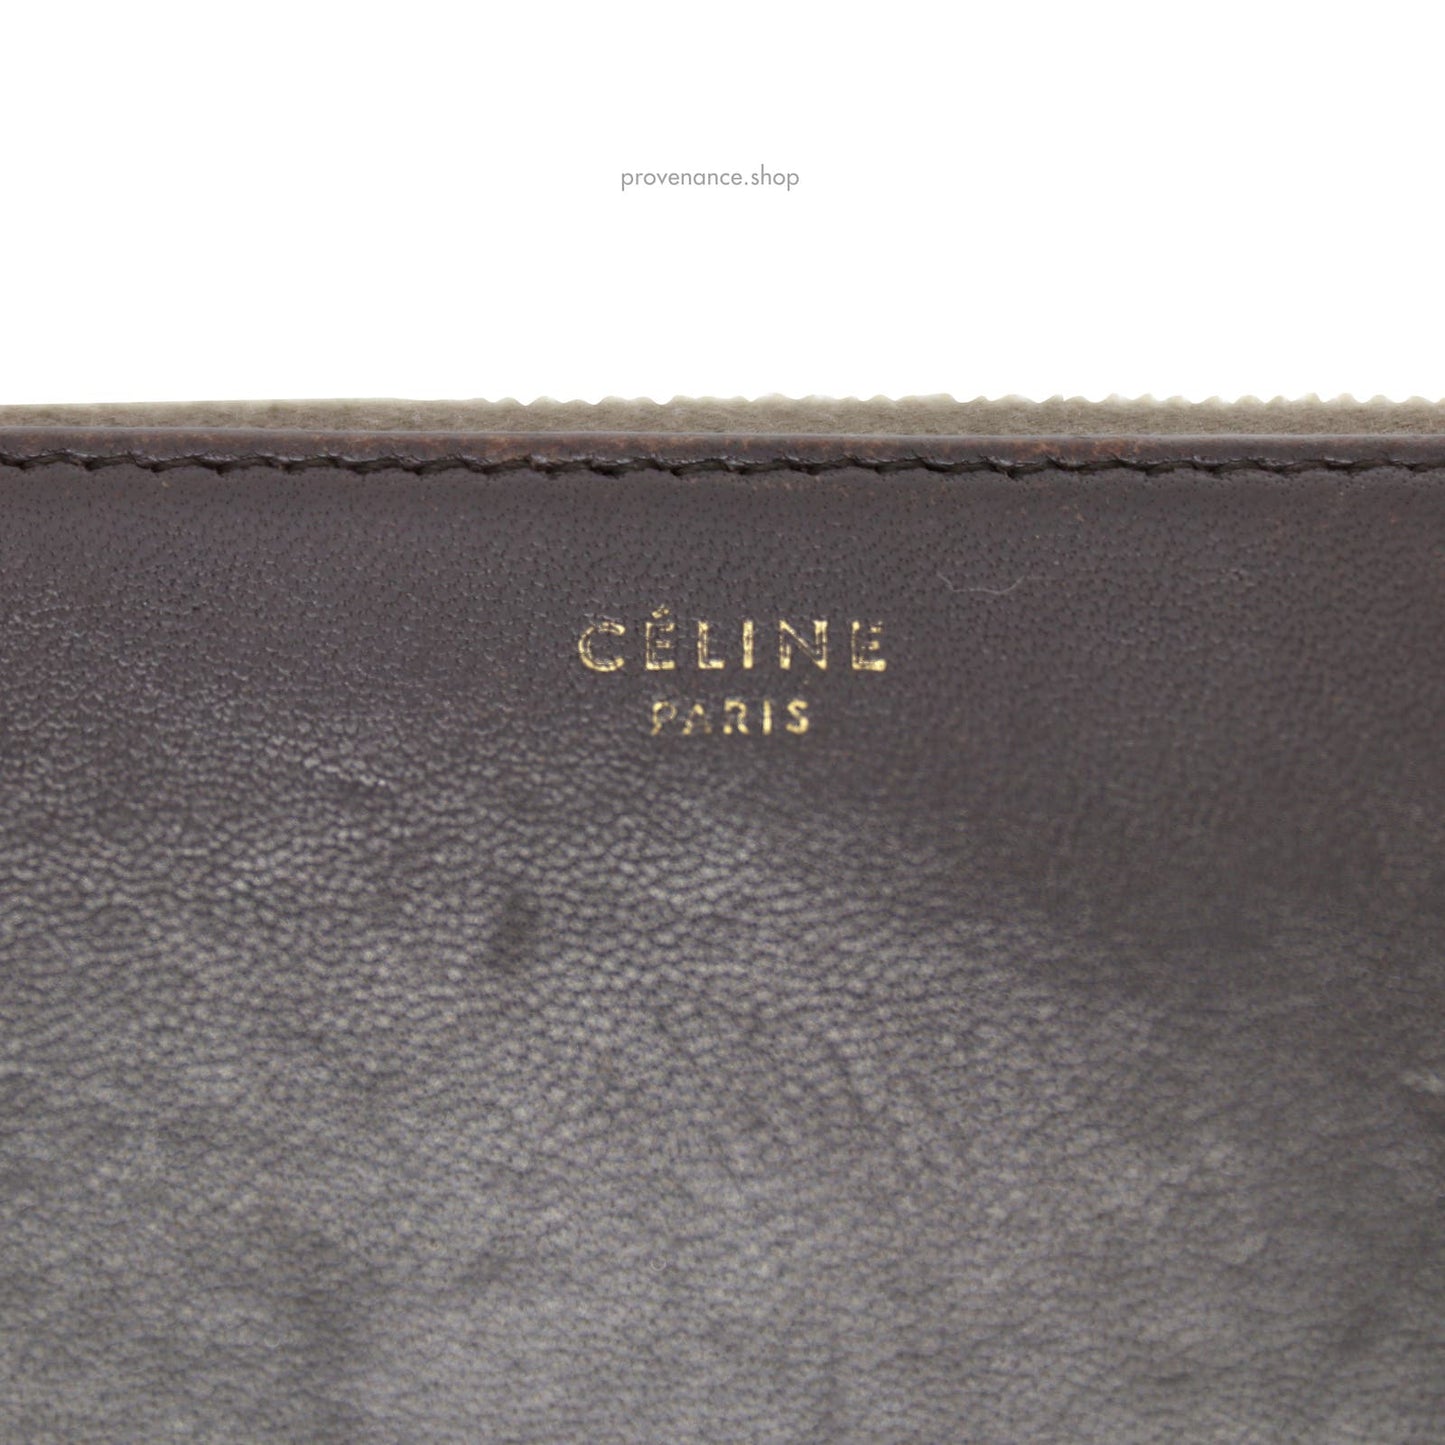 🔴 Celine Multifunction Zip Wallet - Grey/Black